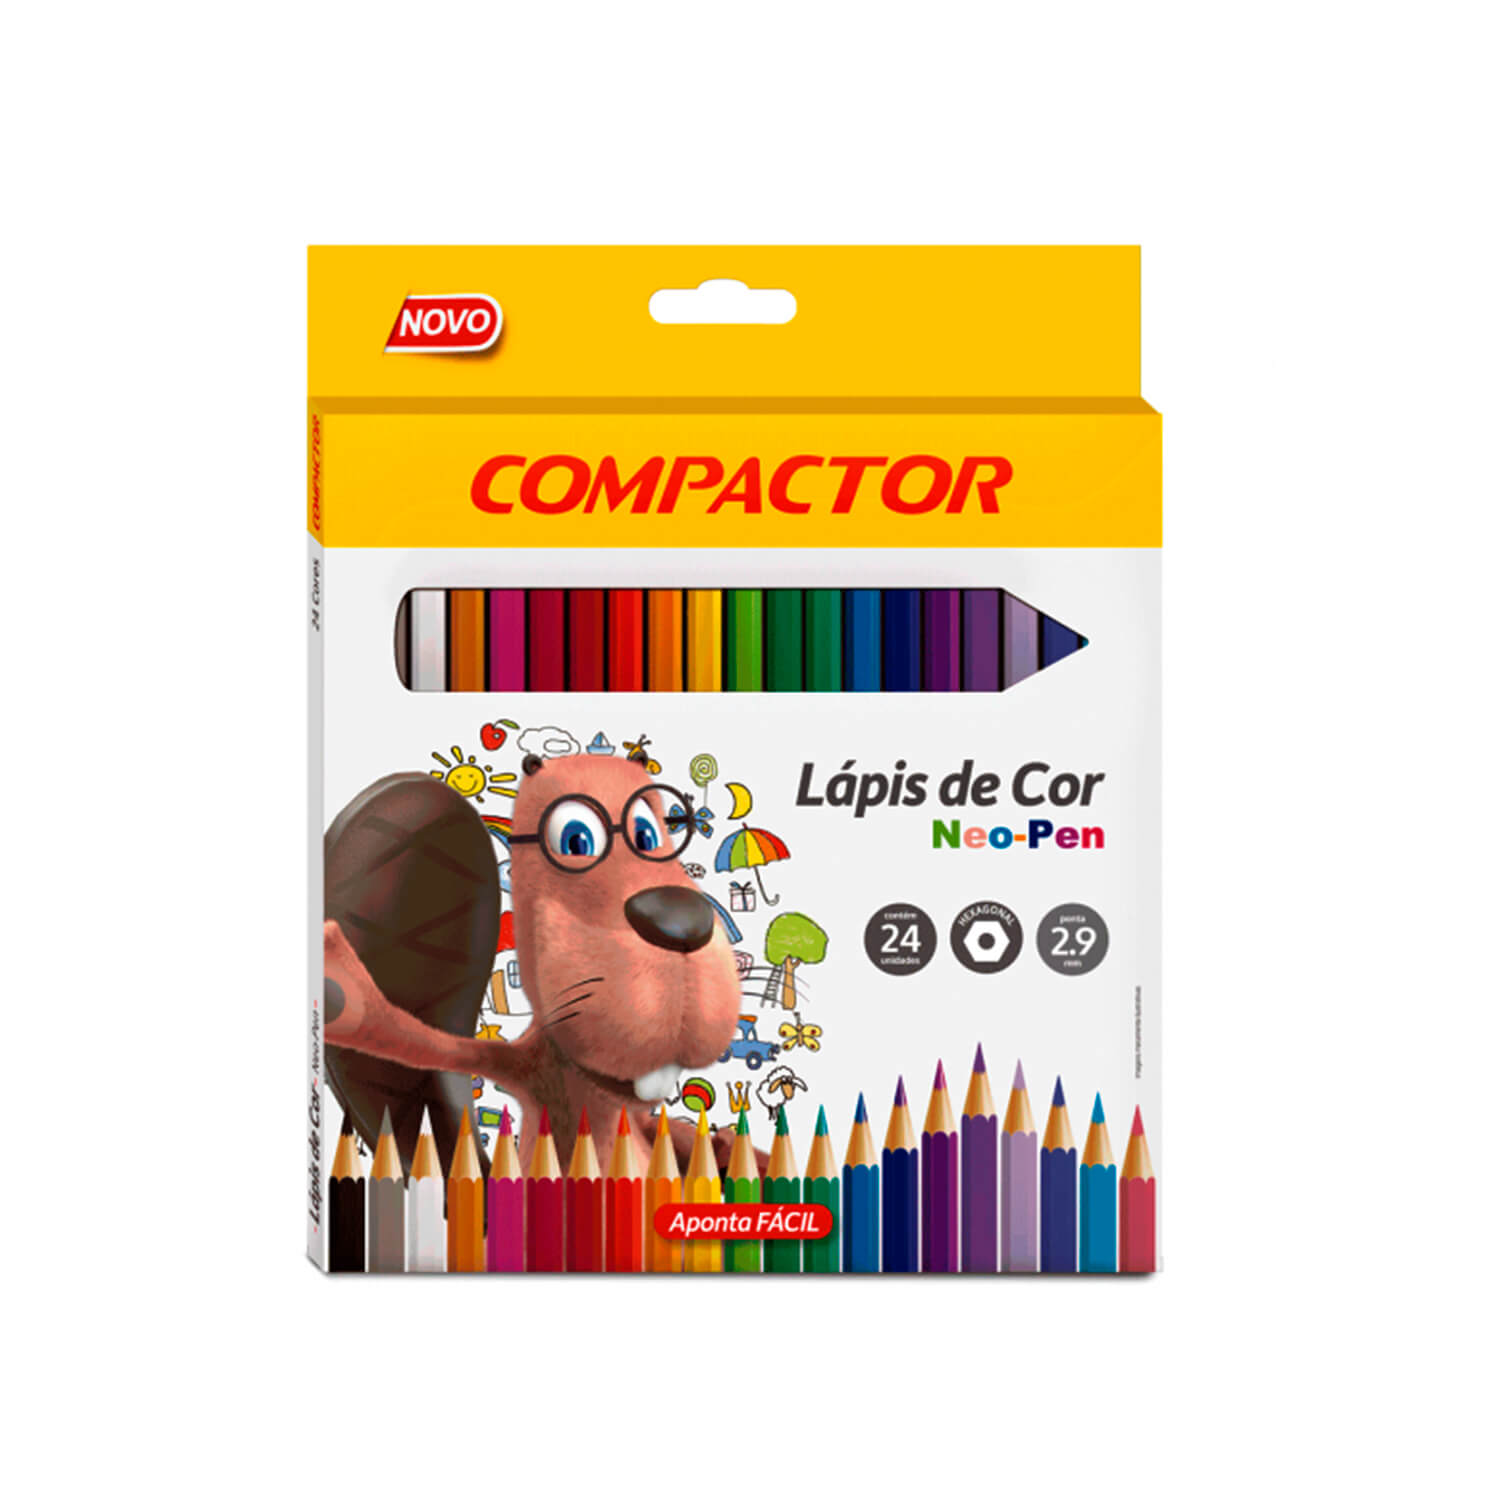 Lojas-TEM-Lapis-de-Cor-Compactor-24-Cores